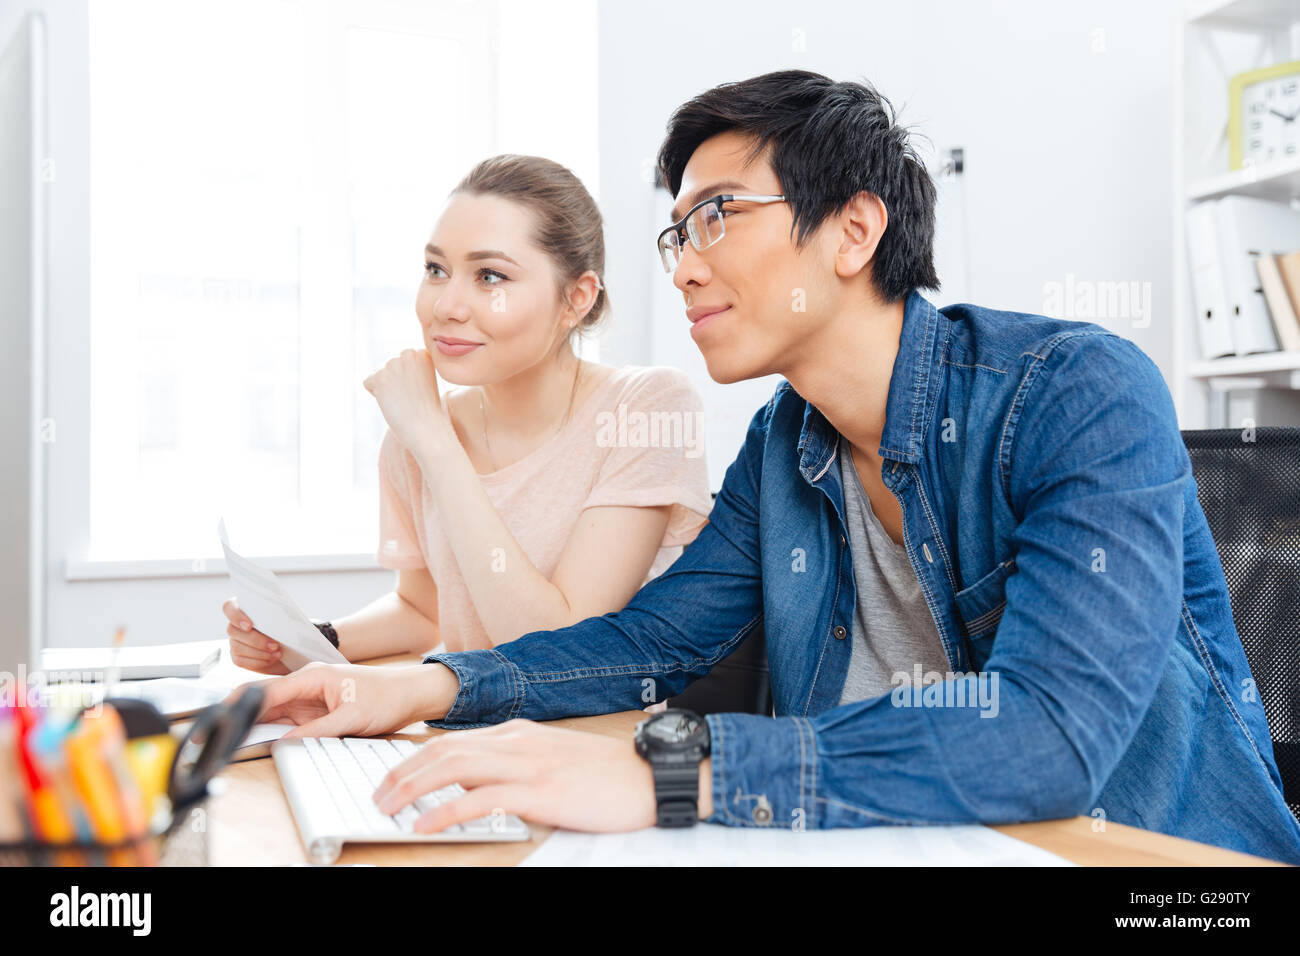 Glückliche junge Frau und asiatischer Mann in Glaases mit Computer zusammen zu arbeiten Stockfoto